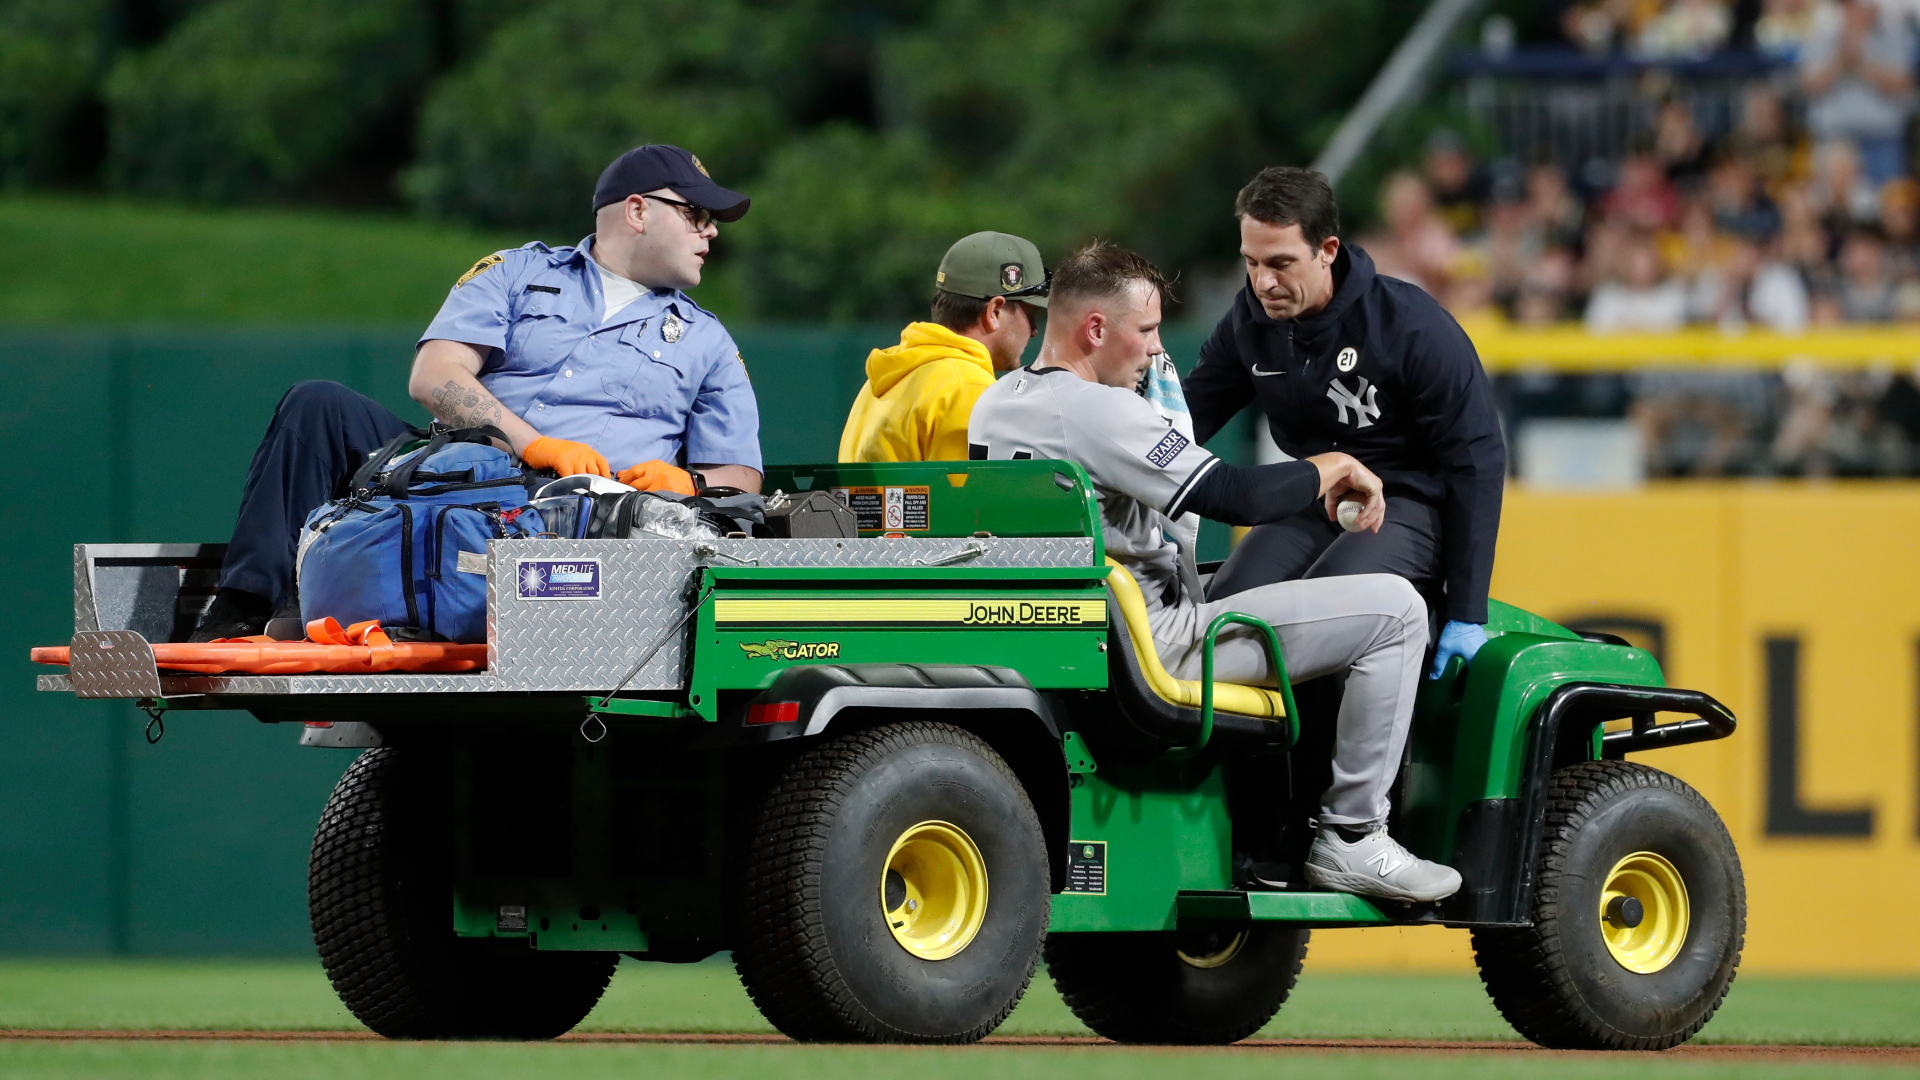 Yankees pitcher Anthony Misiewicz injured during Pirates game